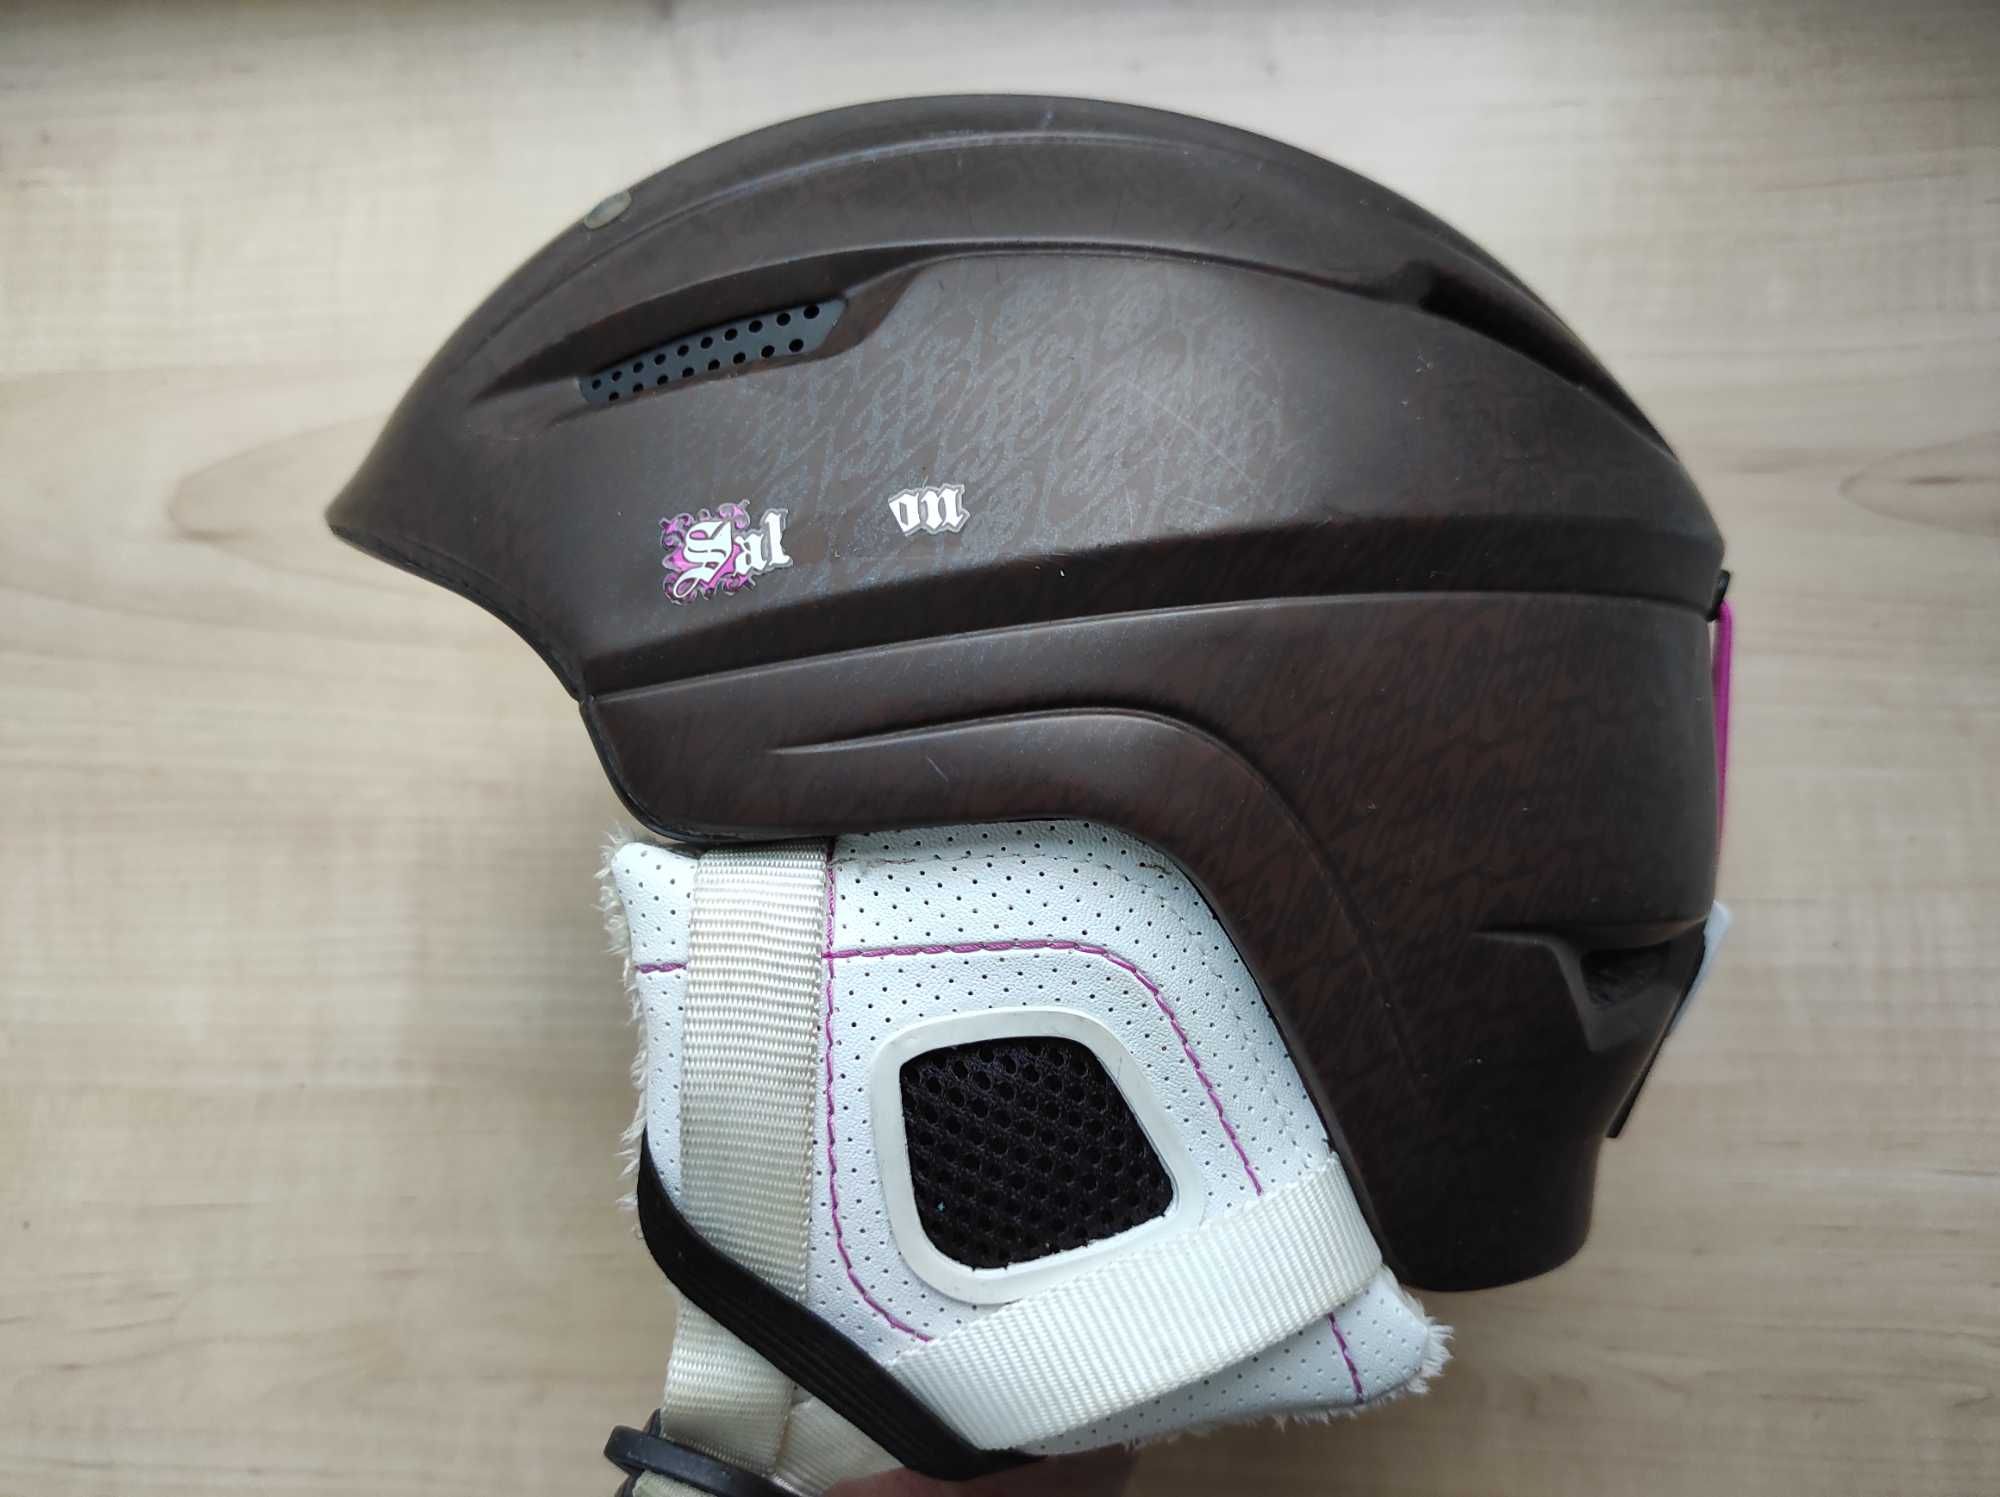 Горнолыжный шлем Salomon Poison, размер S 55-56см, сноубордический